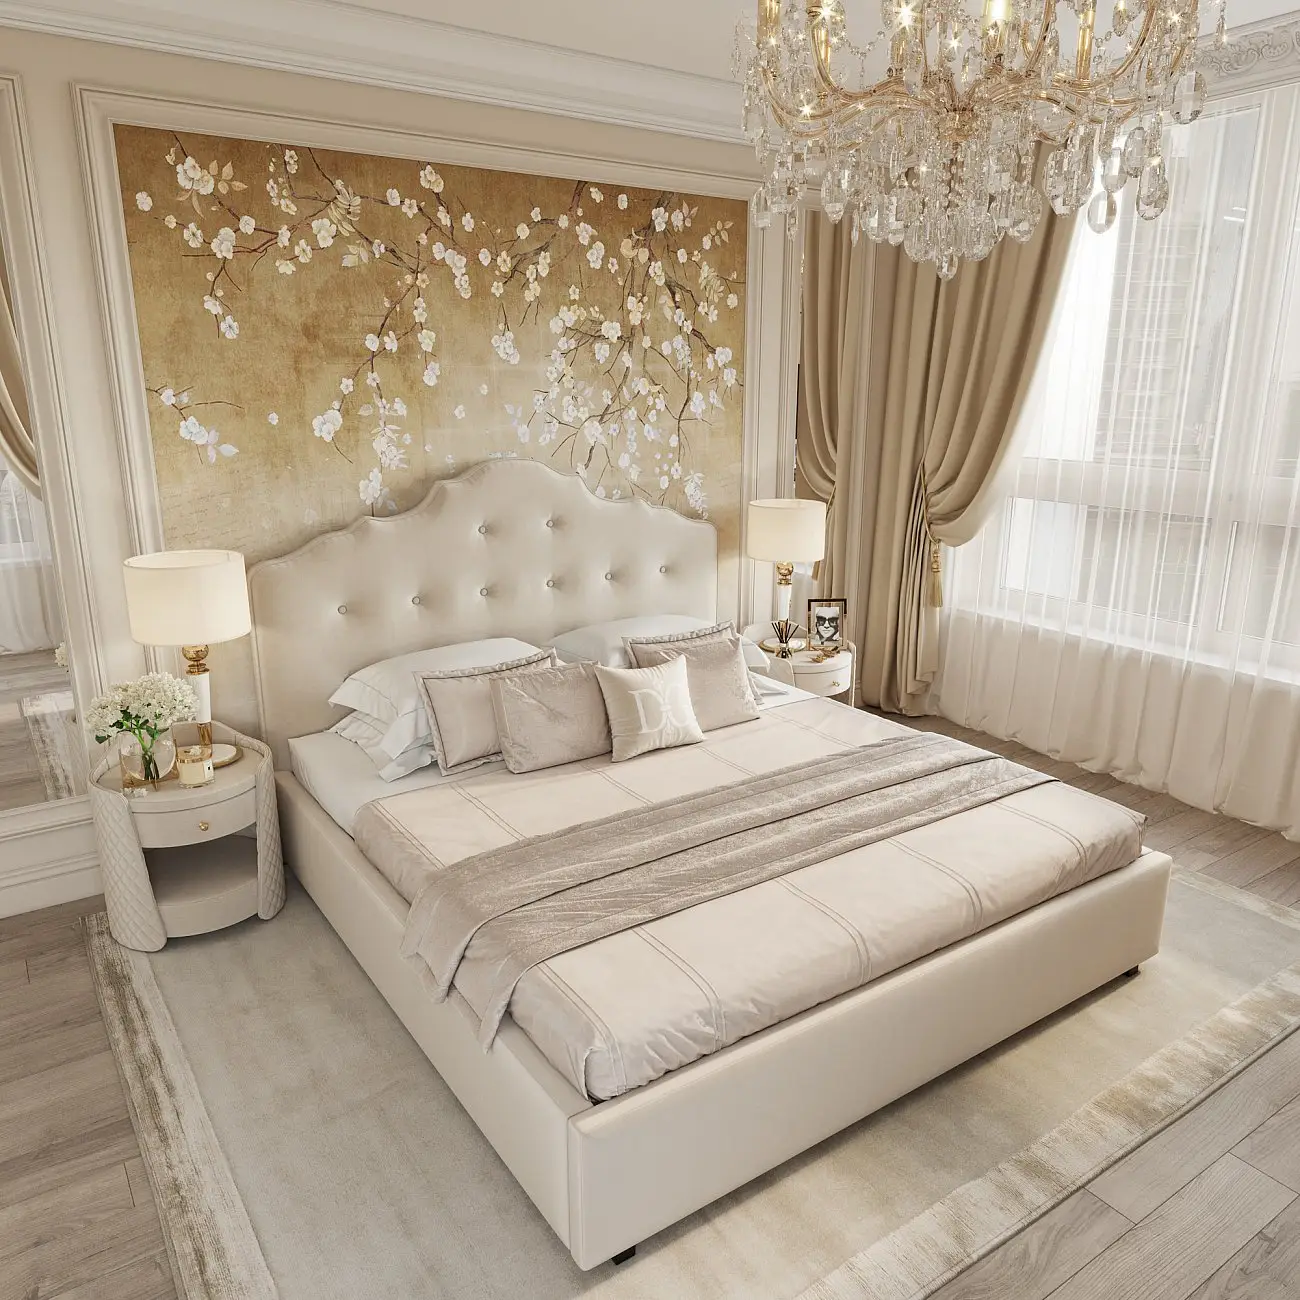 Кровать двуспальная 180х200 см серо-коричневая Palace